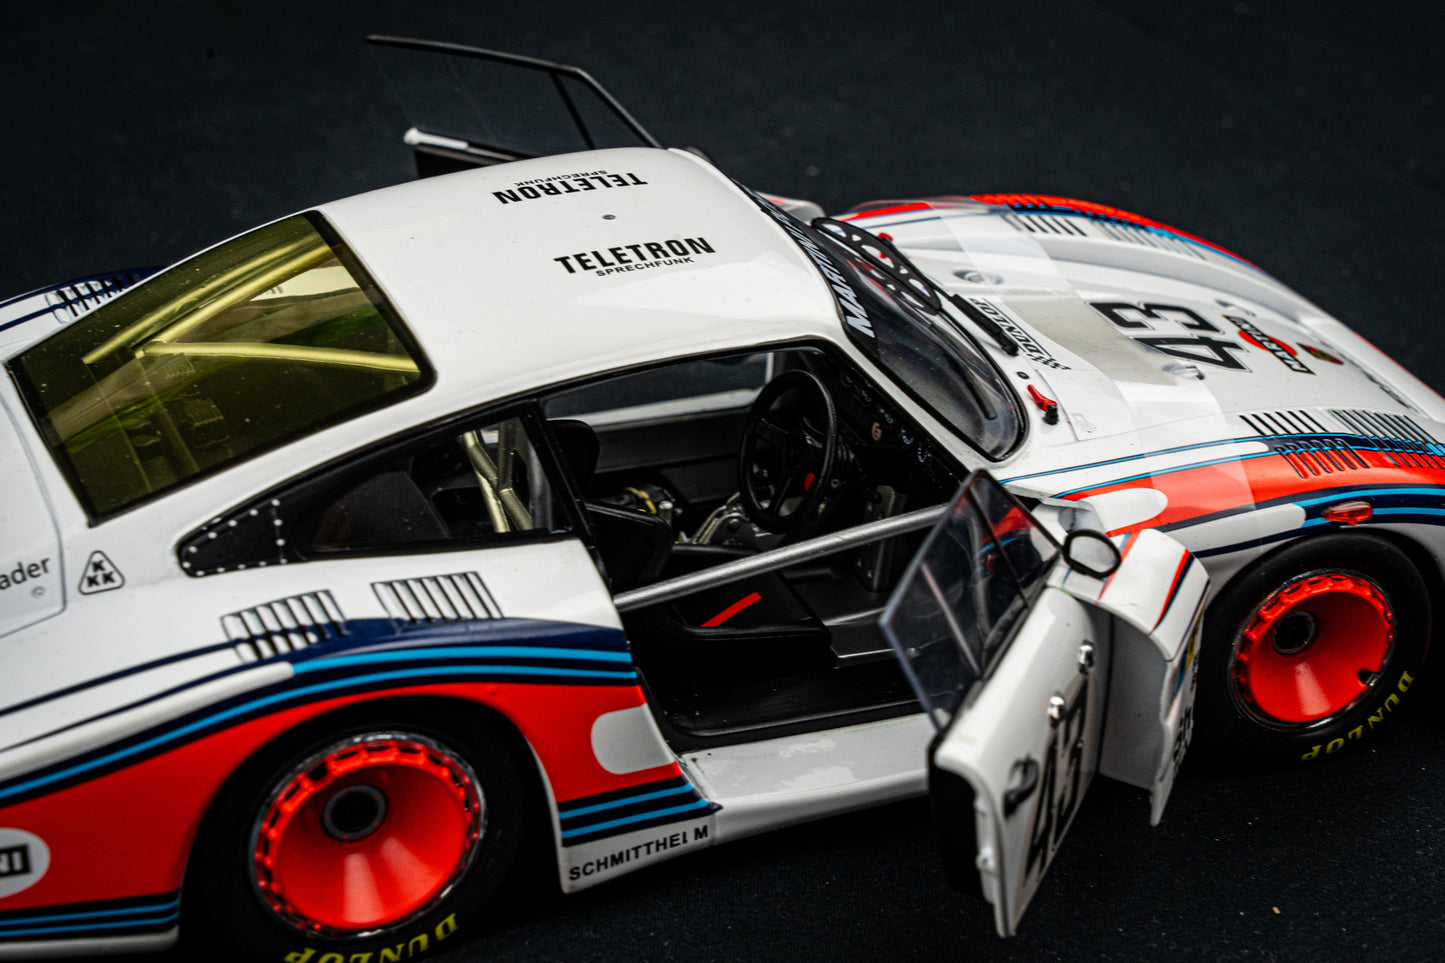 Porsche 935/78 "Moby Dick" #43 Schurti / Stommelen - 8th 24h LeMans 1978 1:18